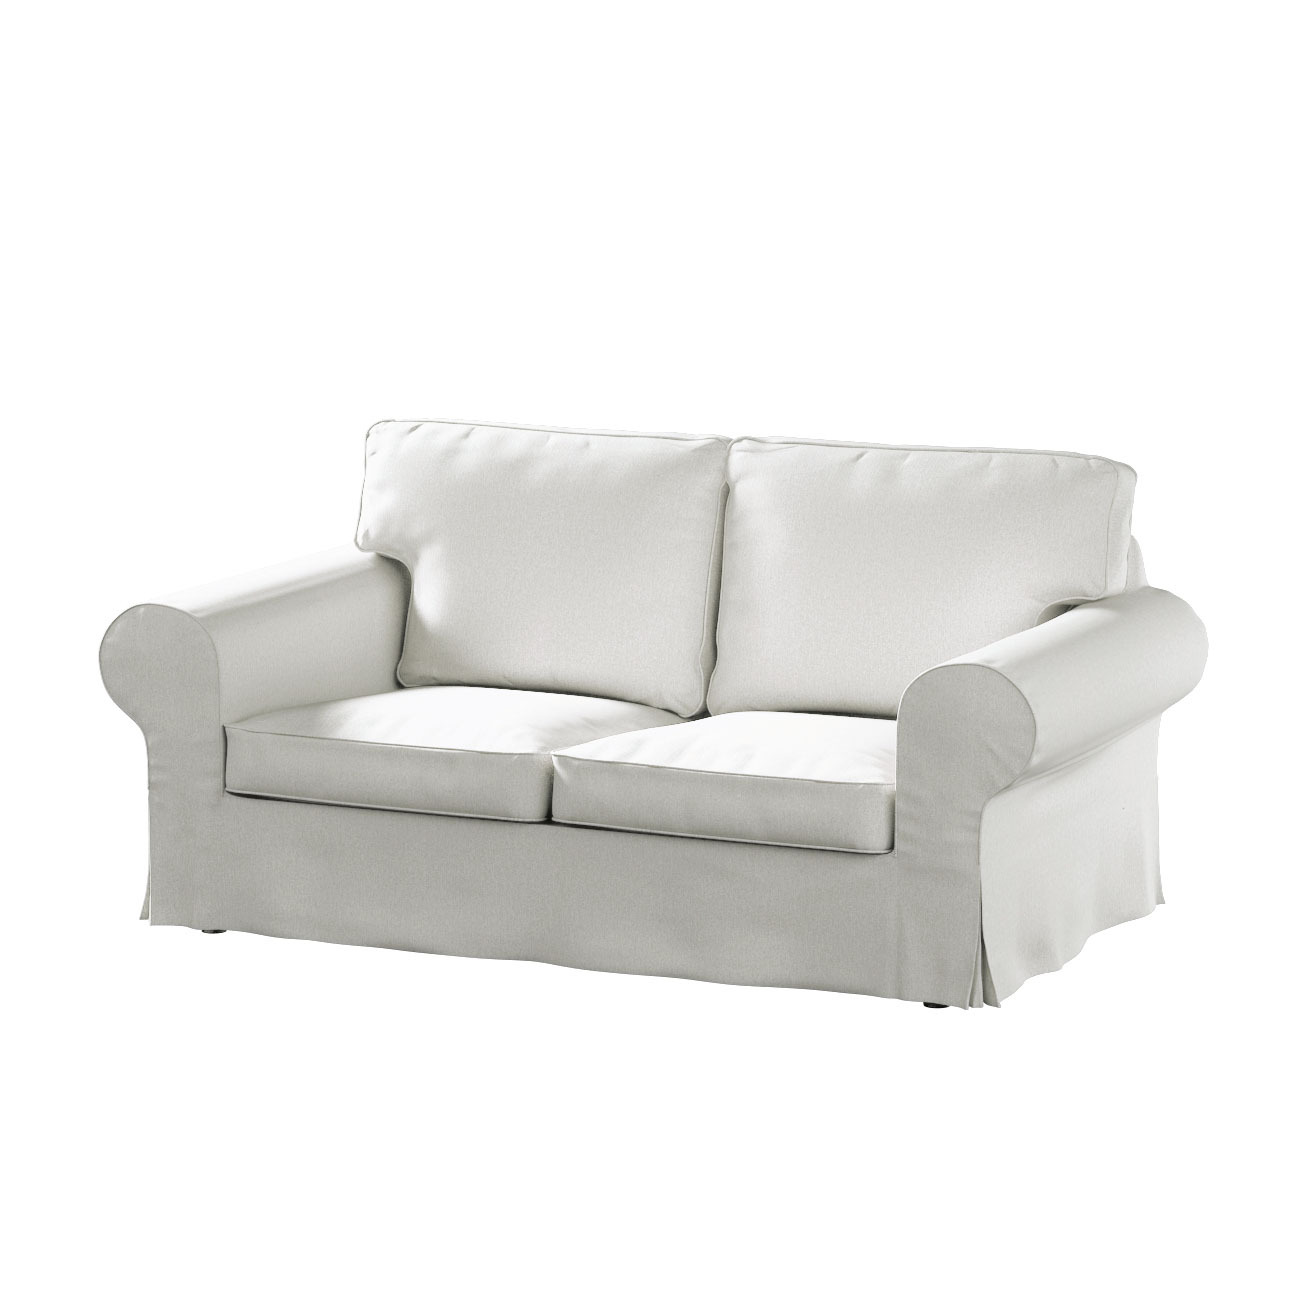 Bezug für Ektorp 2-Sitzer Sofa nicht ausklappbar, creme, Sofabezug für  Ekt günstig online kaufen